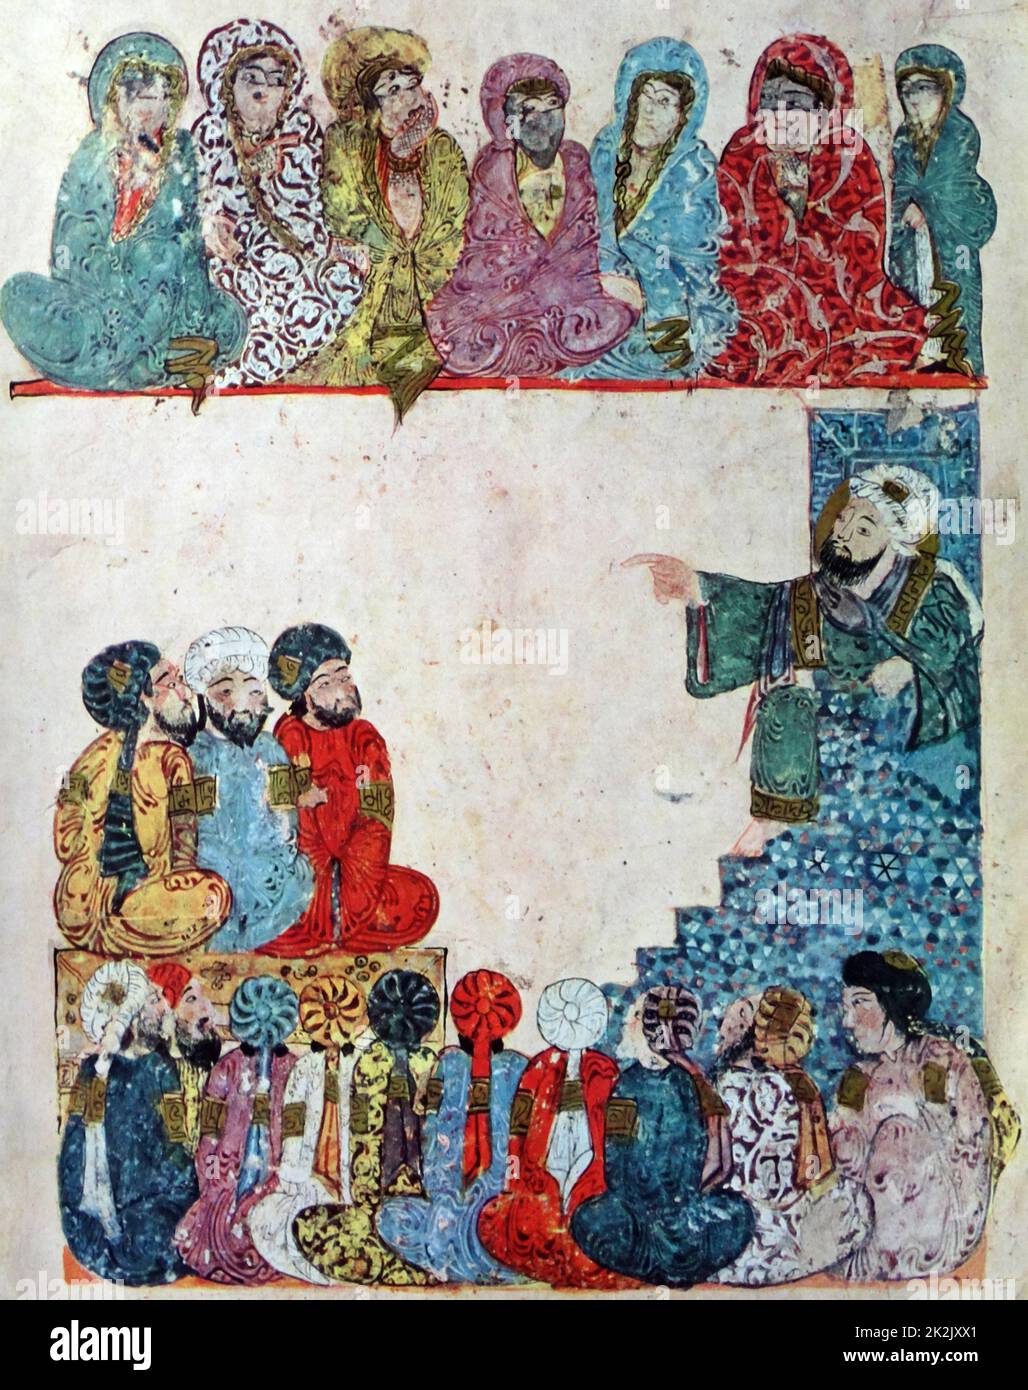 Abu Zayd predicación; Ilustración de la Maqamat de al-Hariri, Bibliothèque nationale de France, manuscrito árabe 5847, 1237AD. Folio 58 verso: maqama 21. Foto de stock